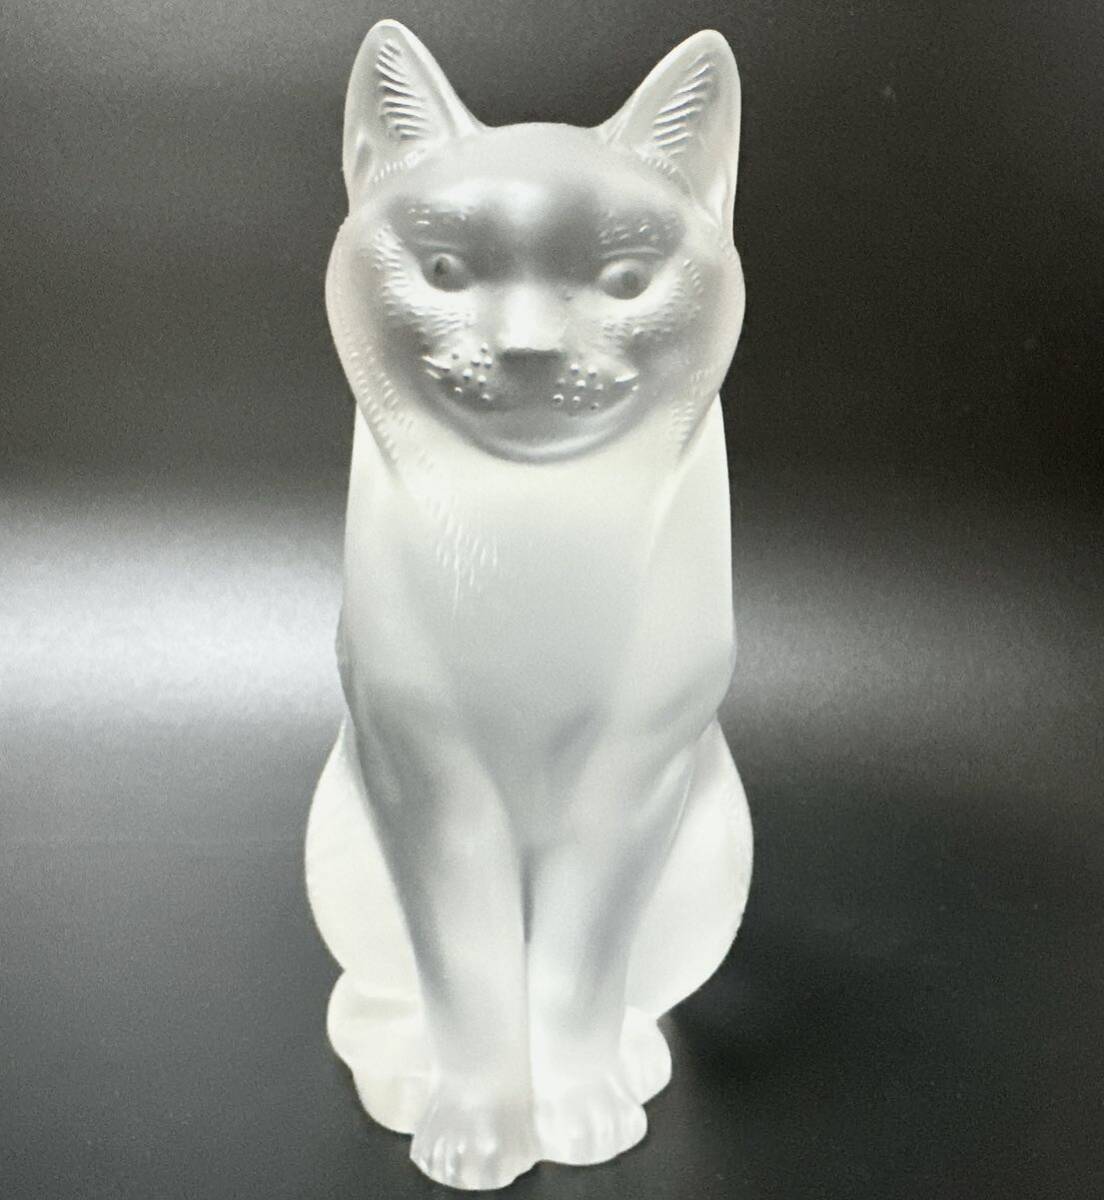  супер название товар lalikLALIQUE кошка кошка cat baccarat crystal фигурка love кошка произведение искусства украшение стекло Vintage высота 21cm осмотр ) baccarat солнечный Louis 